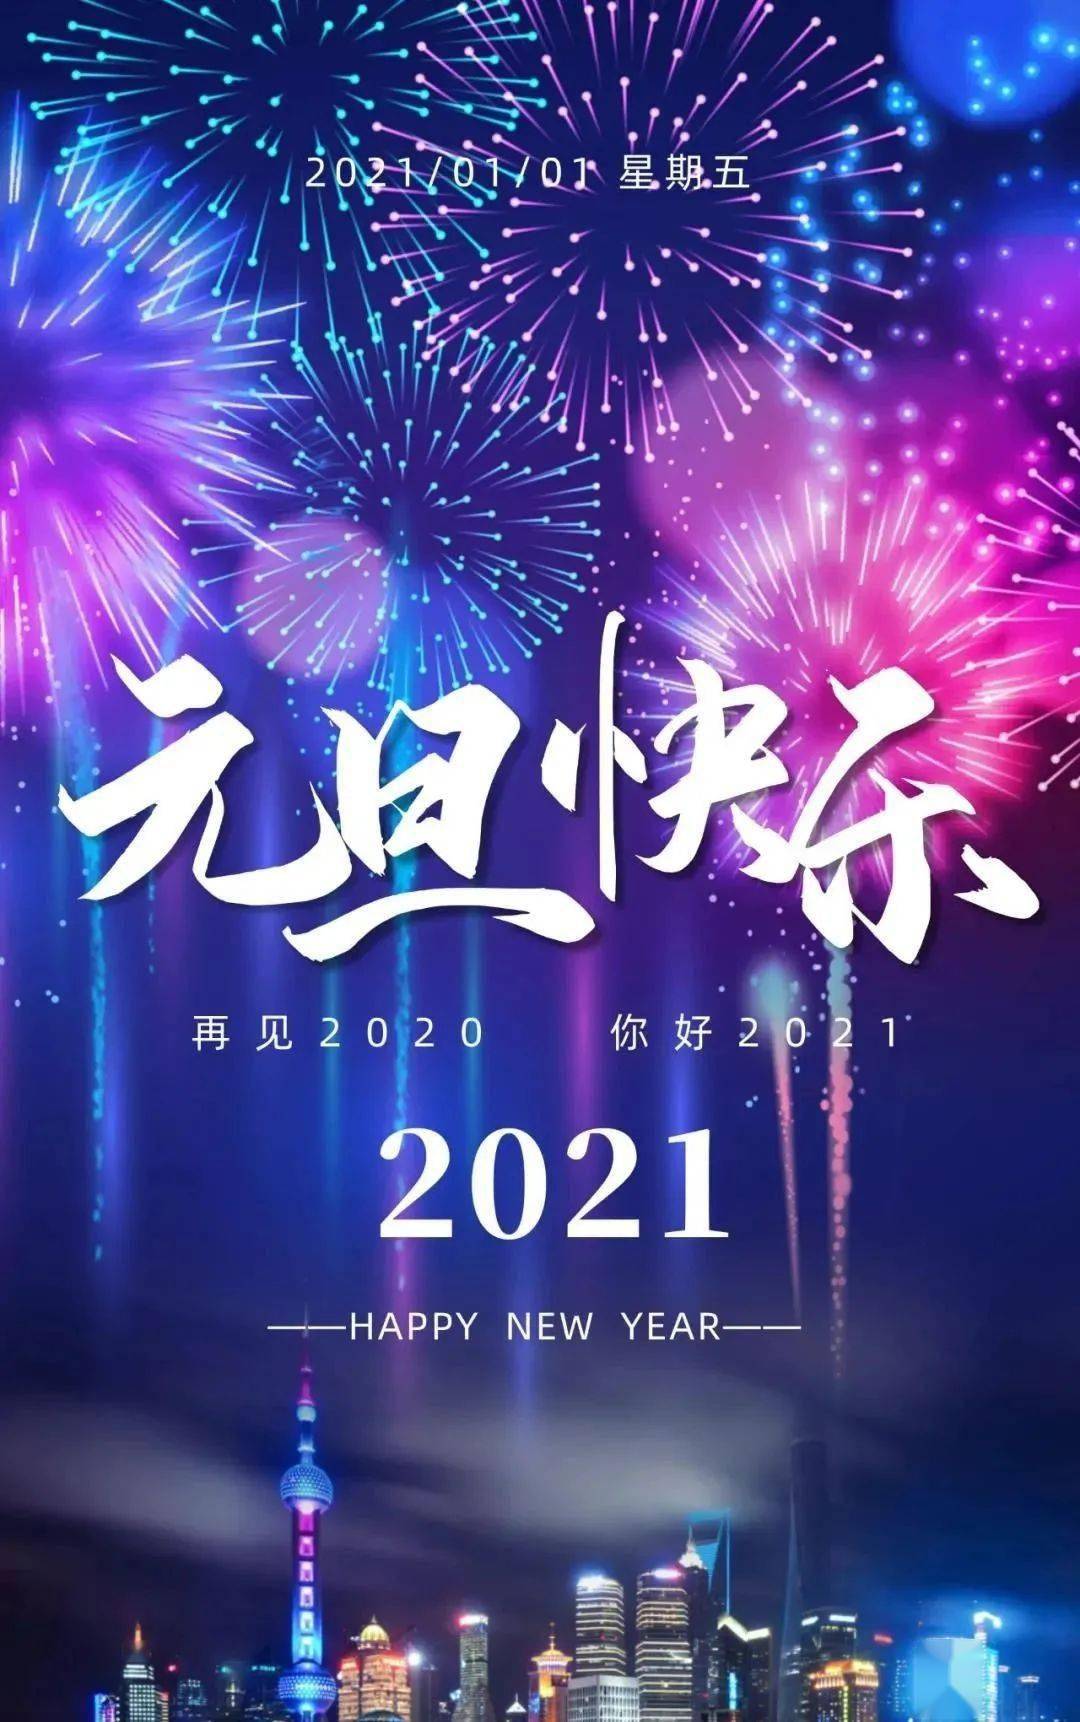 告别2020年,迎接2021年的句子_手机搜狐网